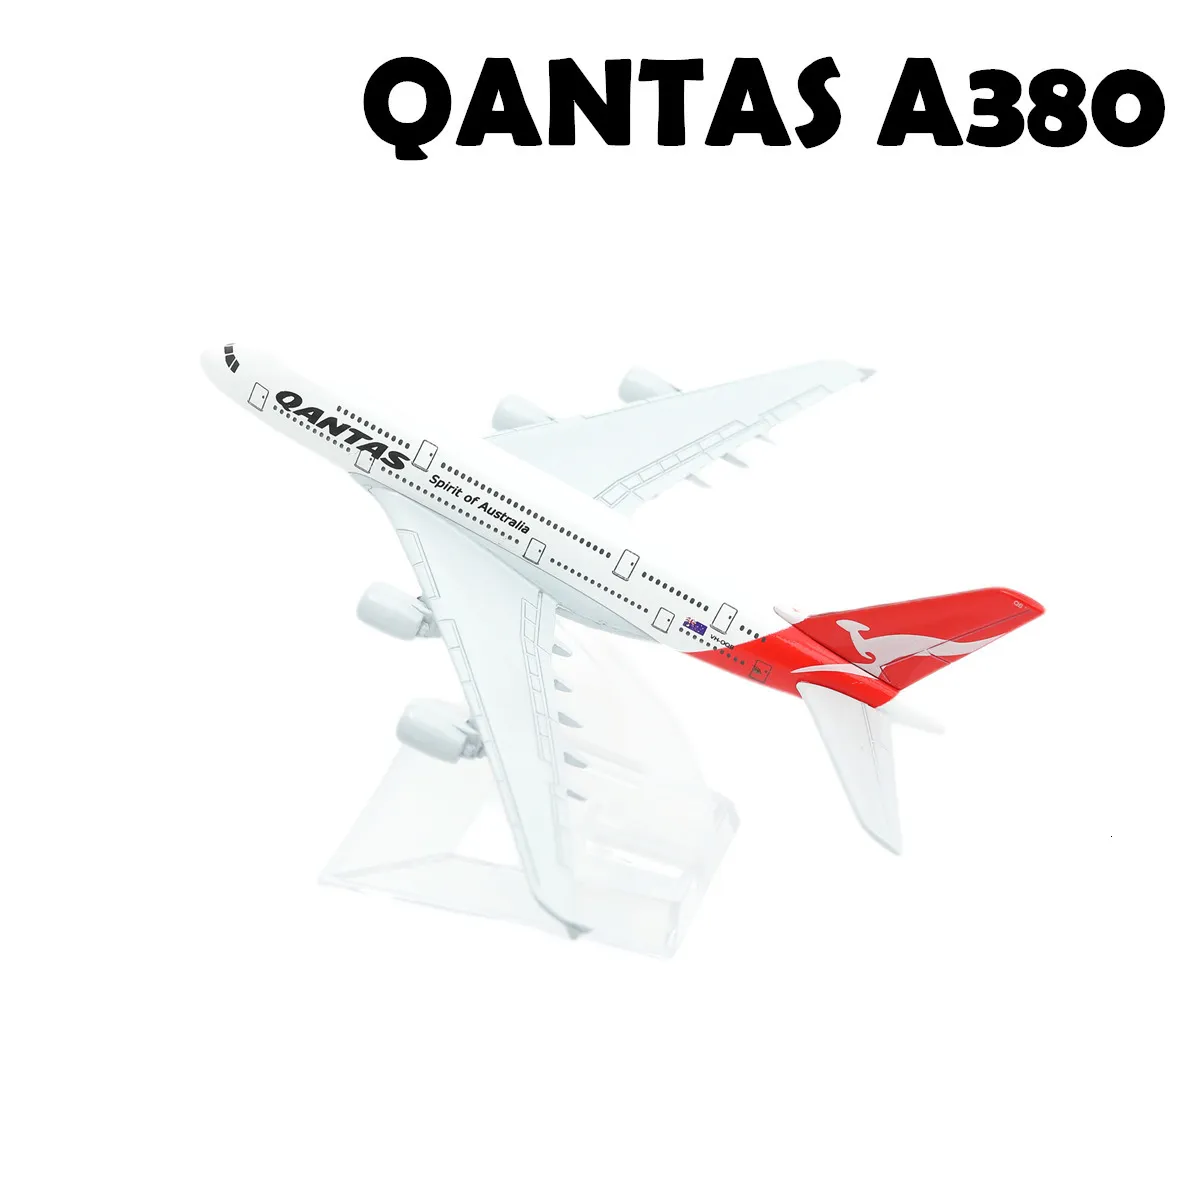 Réplique d'avion en métal échelle 1:400, 15cm, avion Miniature